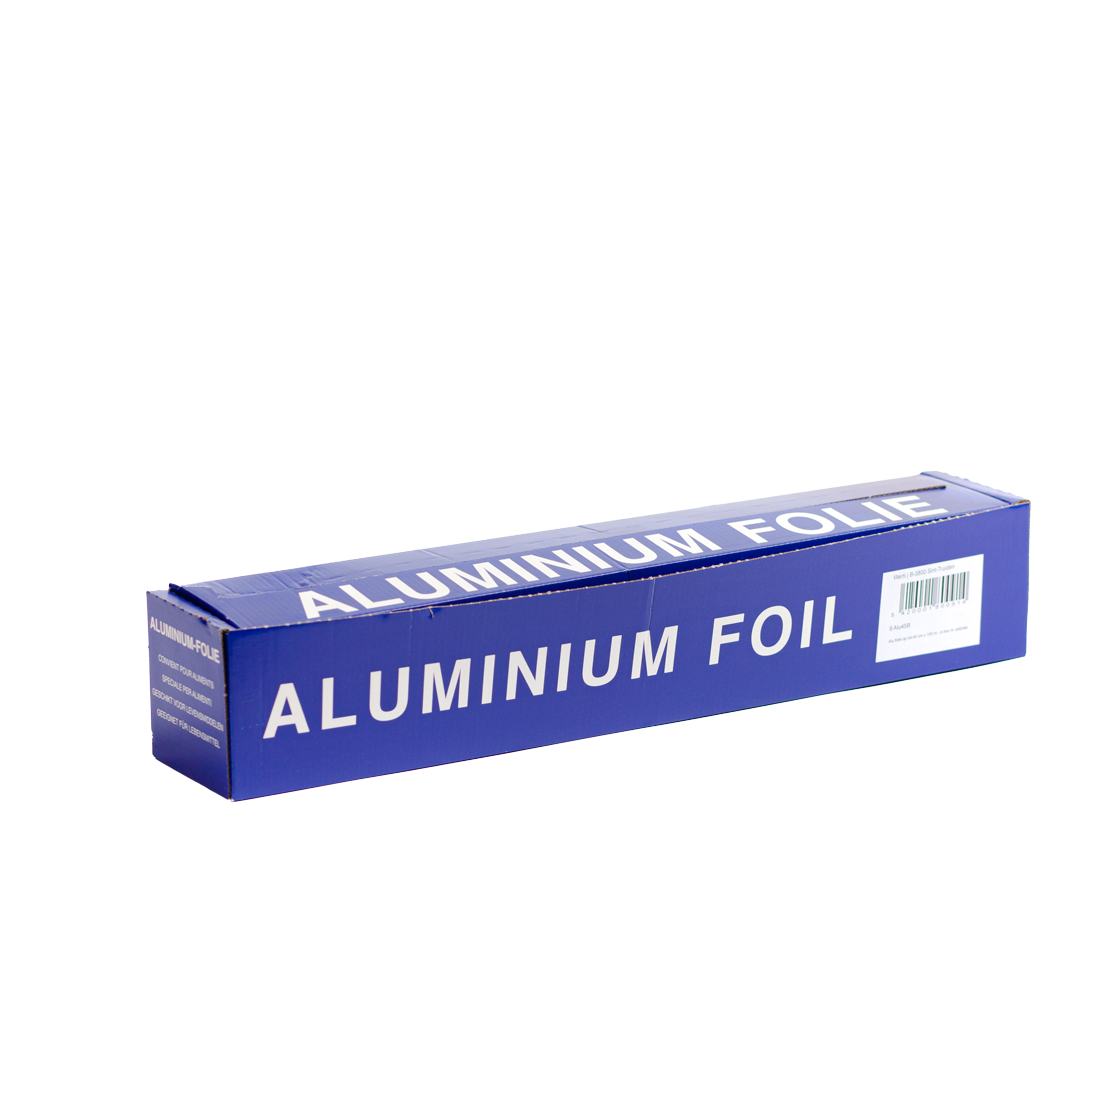 Aluminiumfolie 150 m x 45 cm